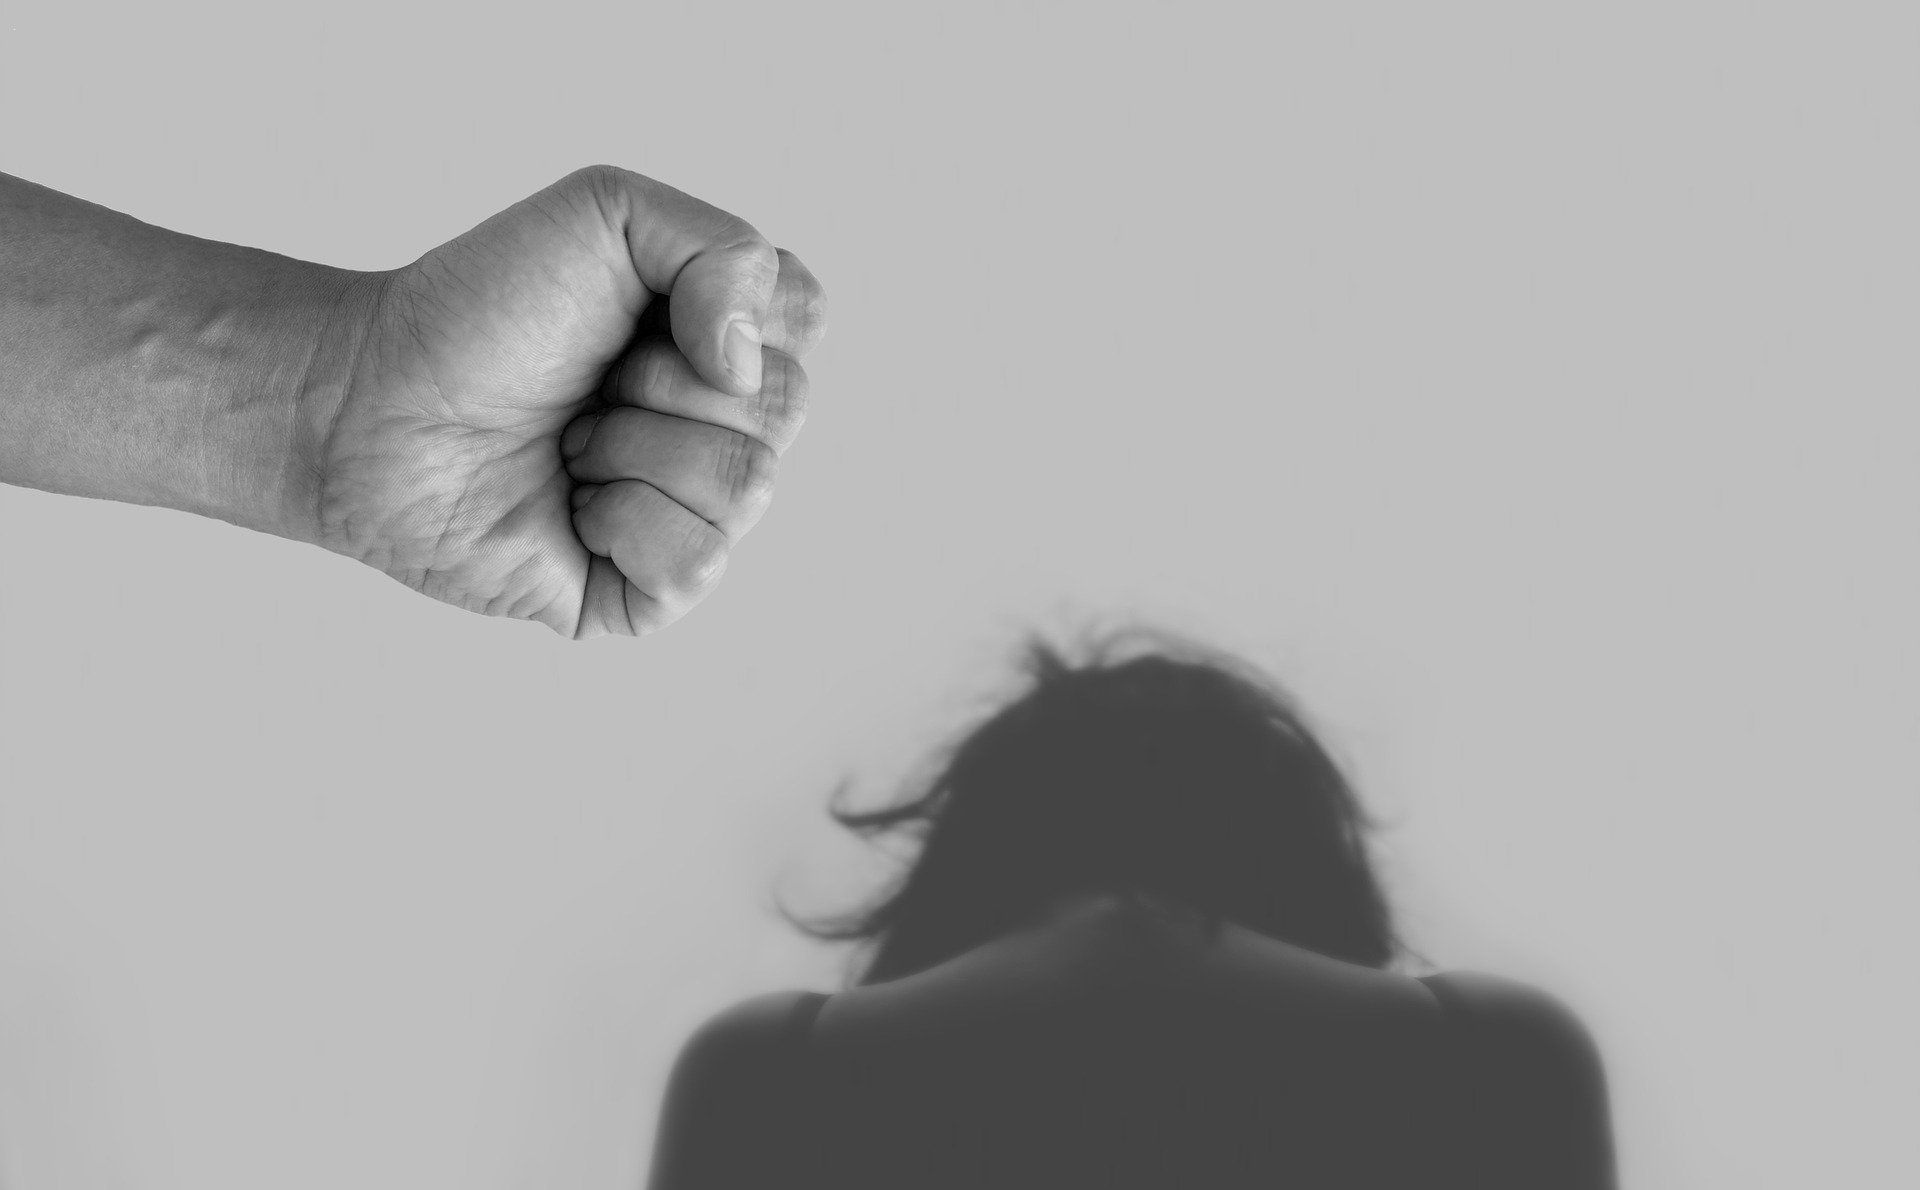 Πέντε μέτρα κατά της βίας και παρενόχλησης στην εργασία – Τι προβλέπει η ΚΥΑ